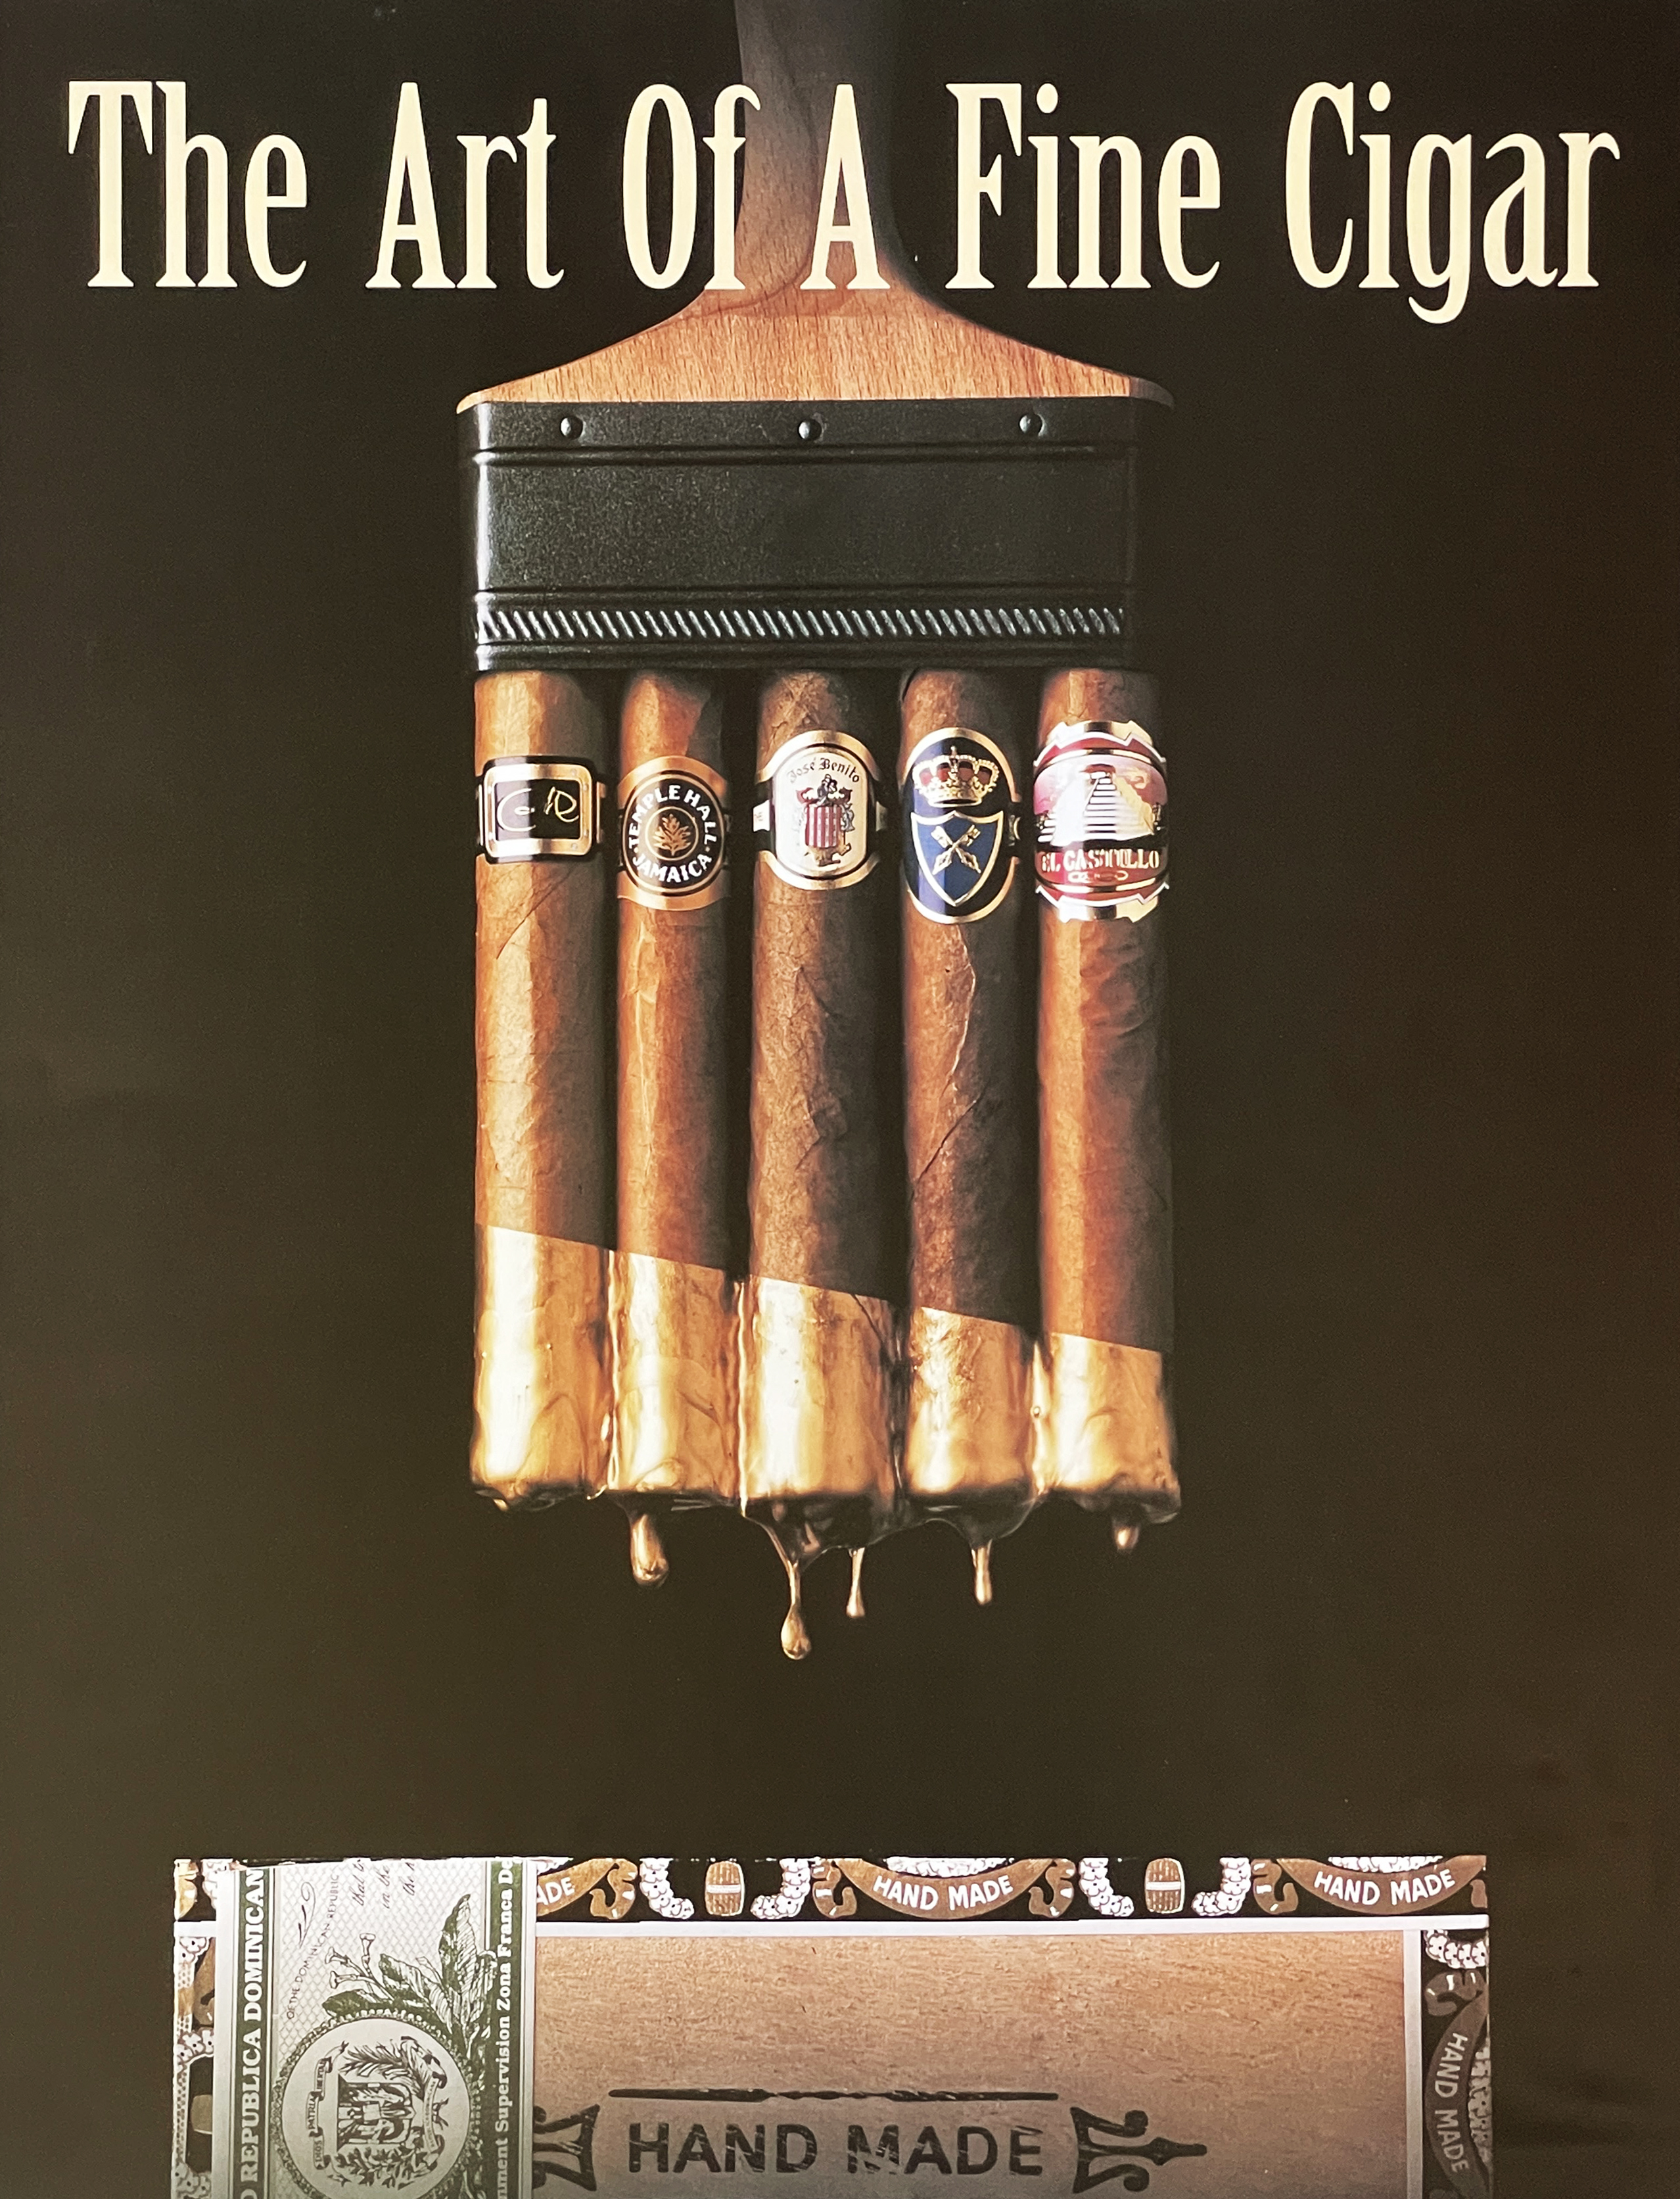 The Art of a Fine Cigar